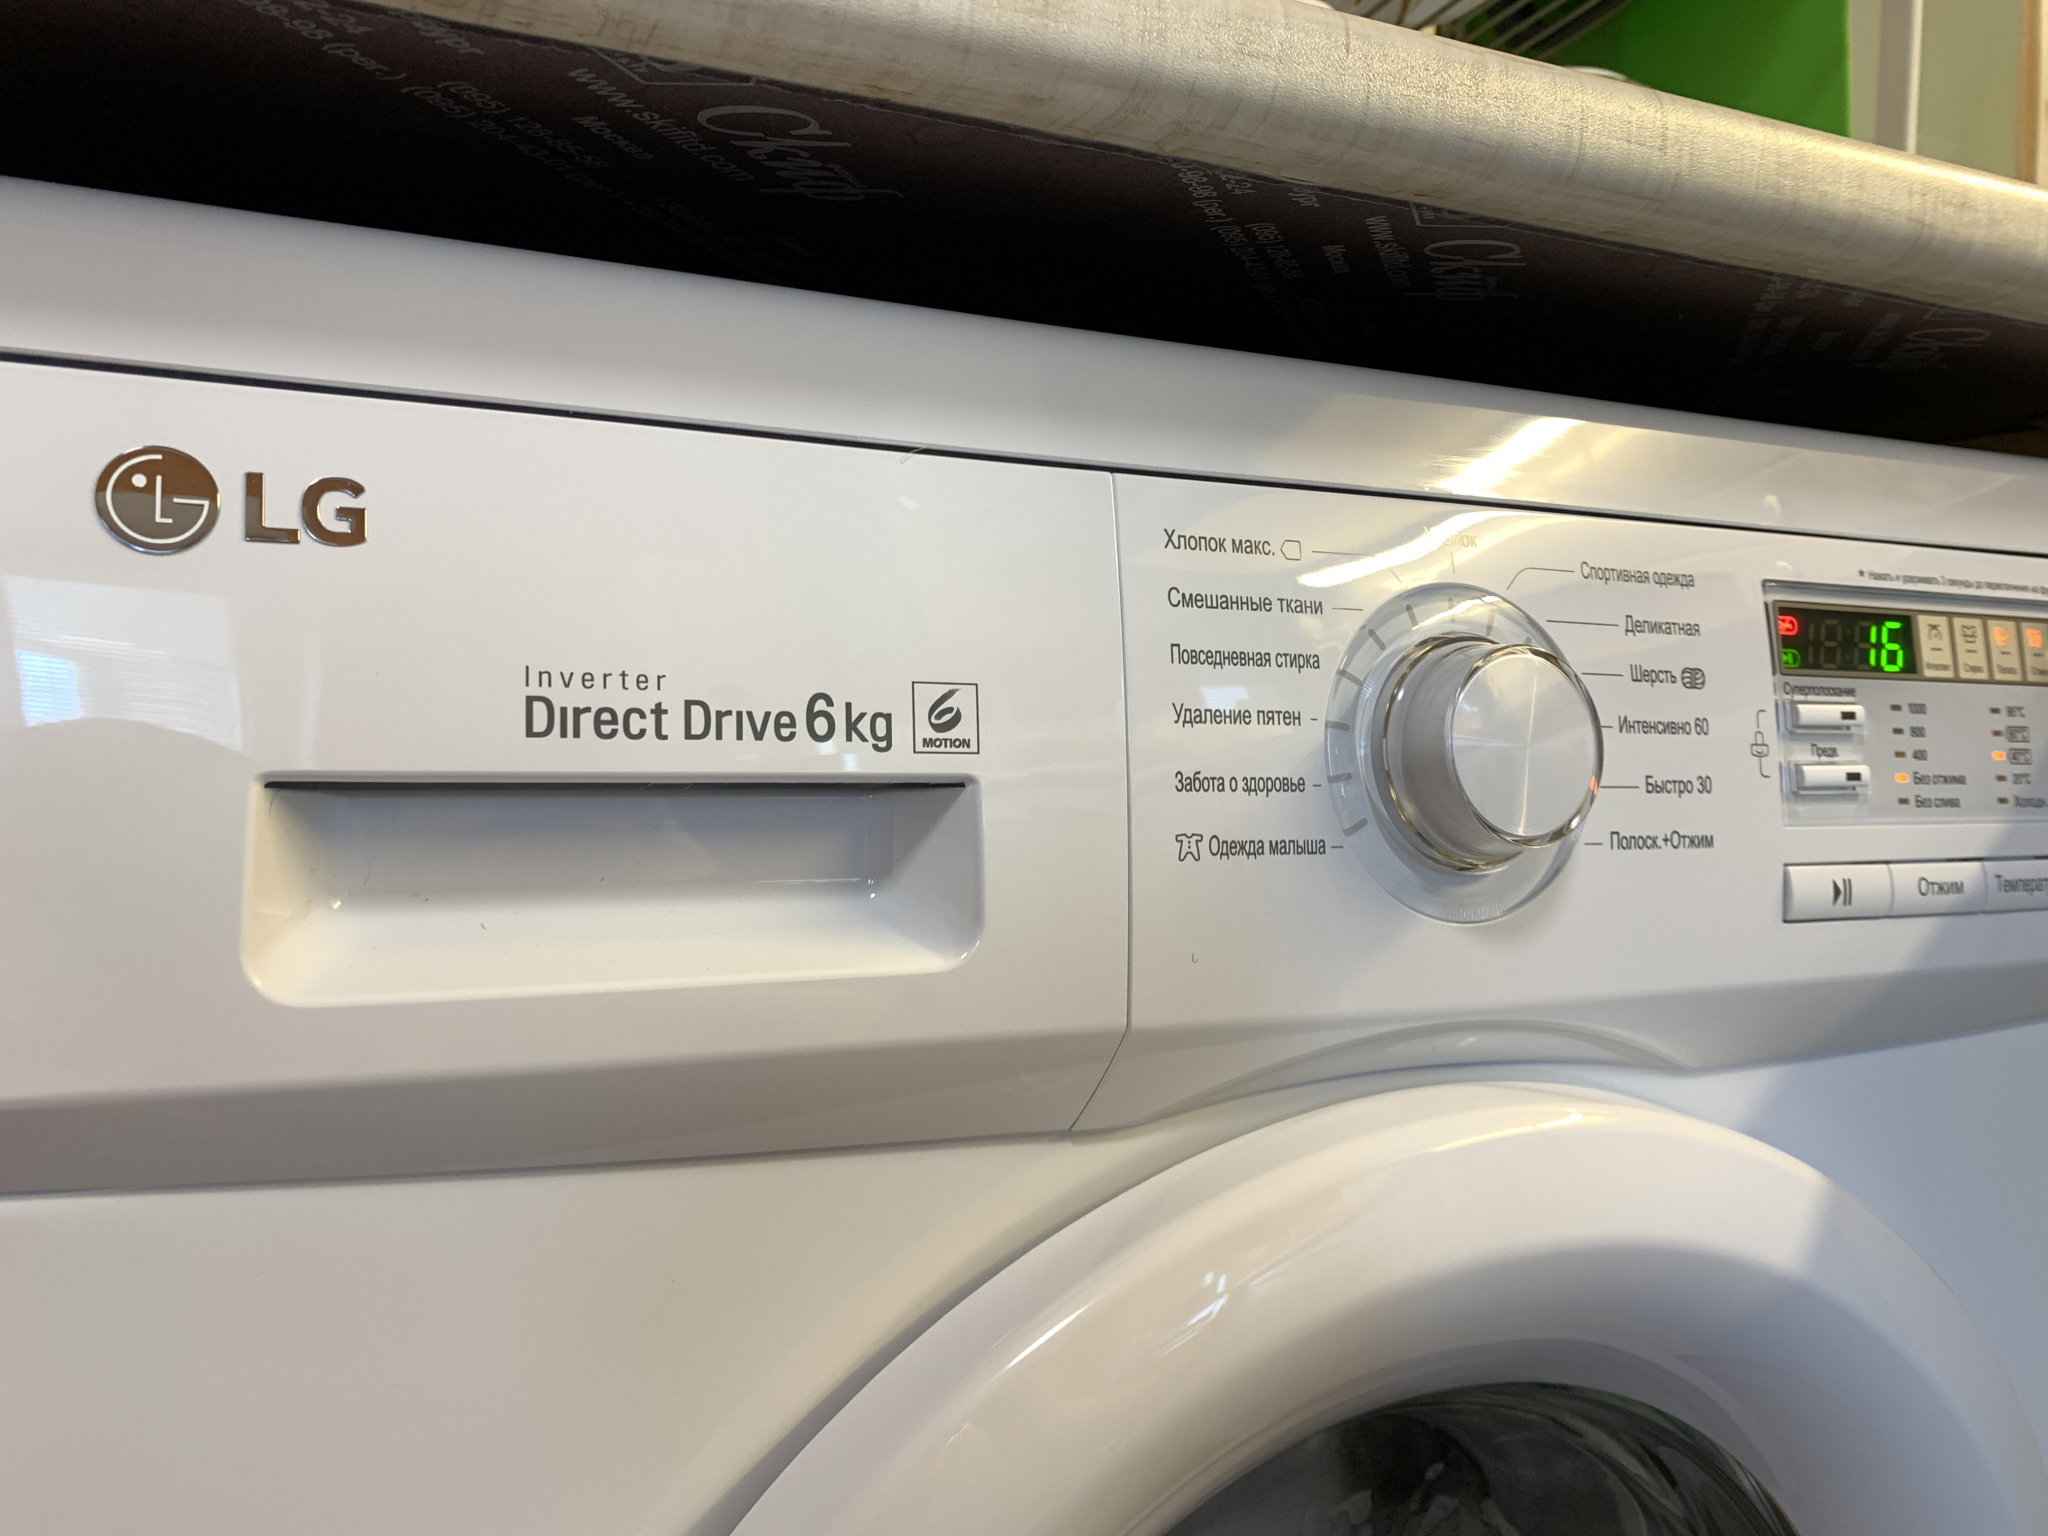 Стиральная машина LG f10b8nd. UE на стиральной машине LG. Стиральная машина LG ошибка UE. Стиральная машинка LG direct Drive 6kg ошибка UE.